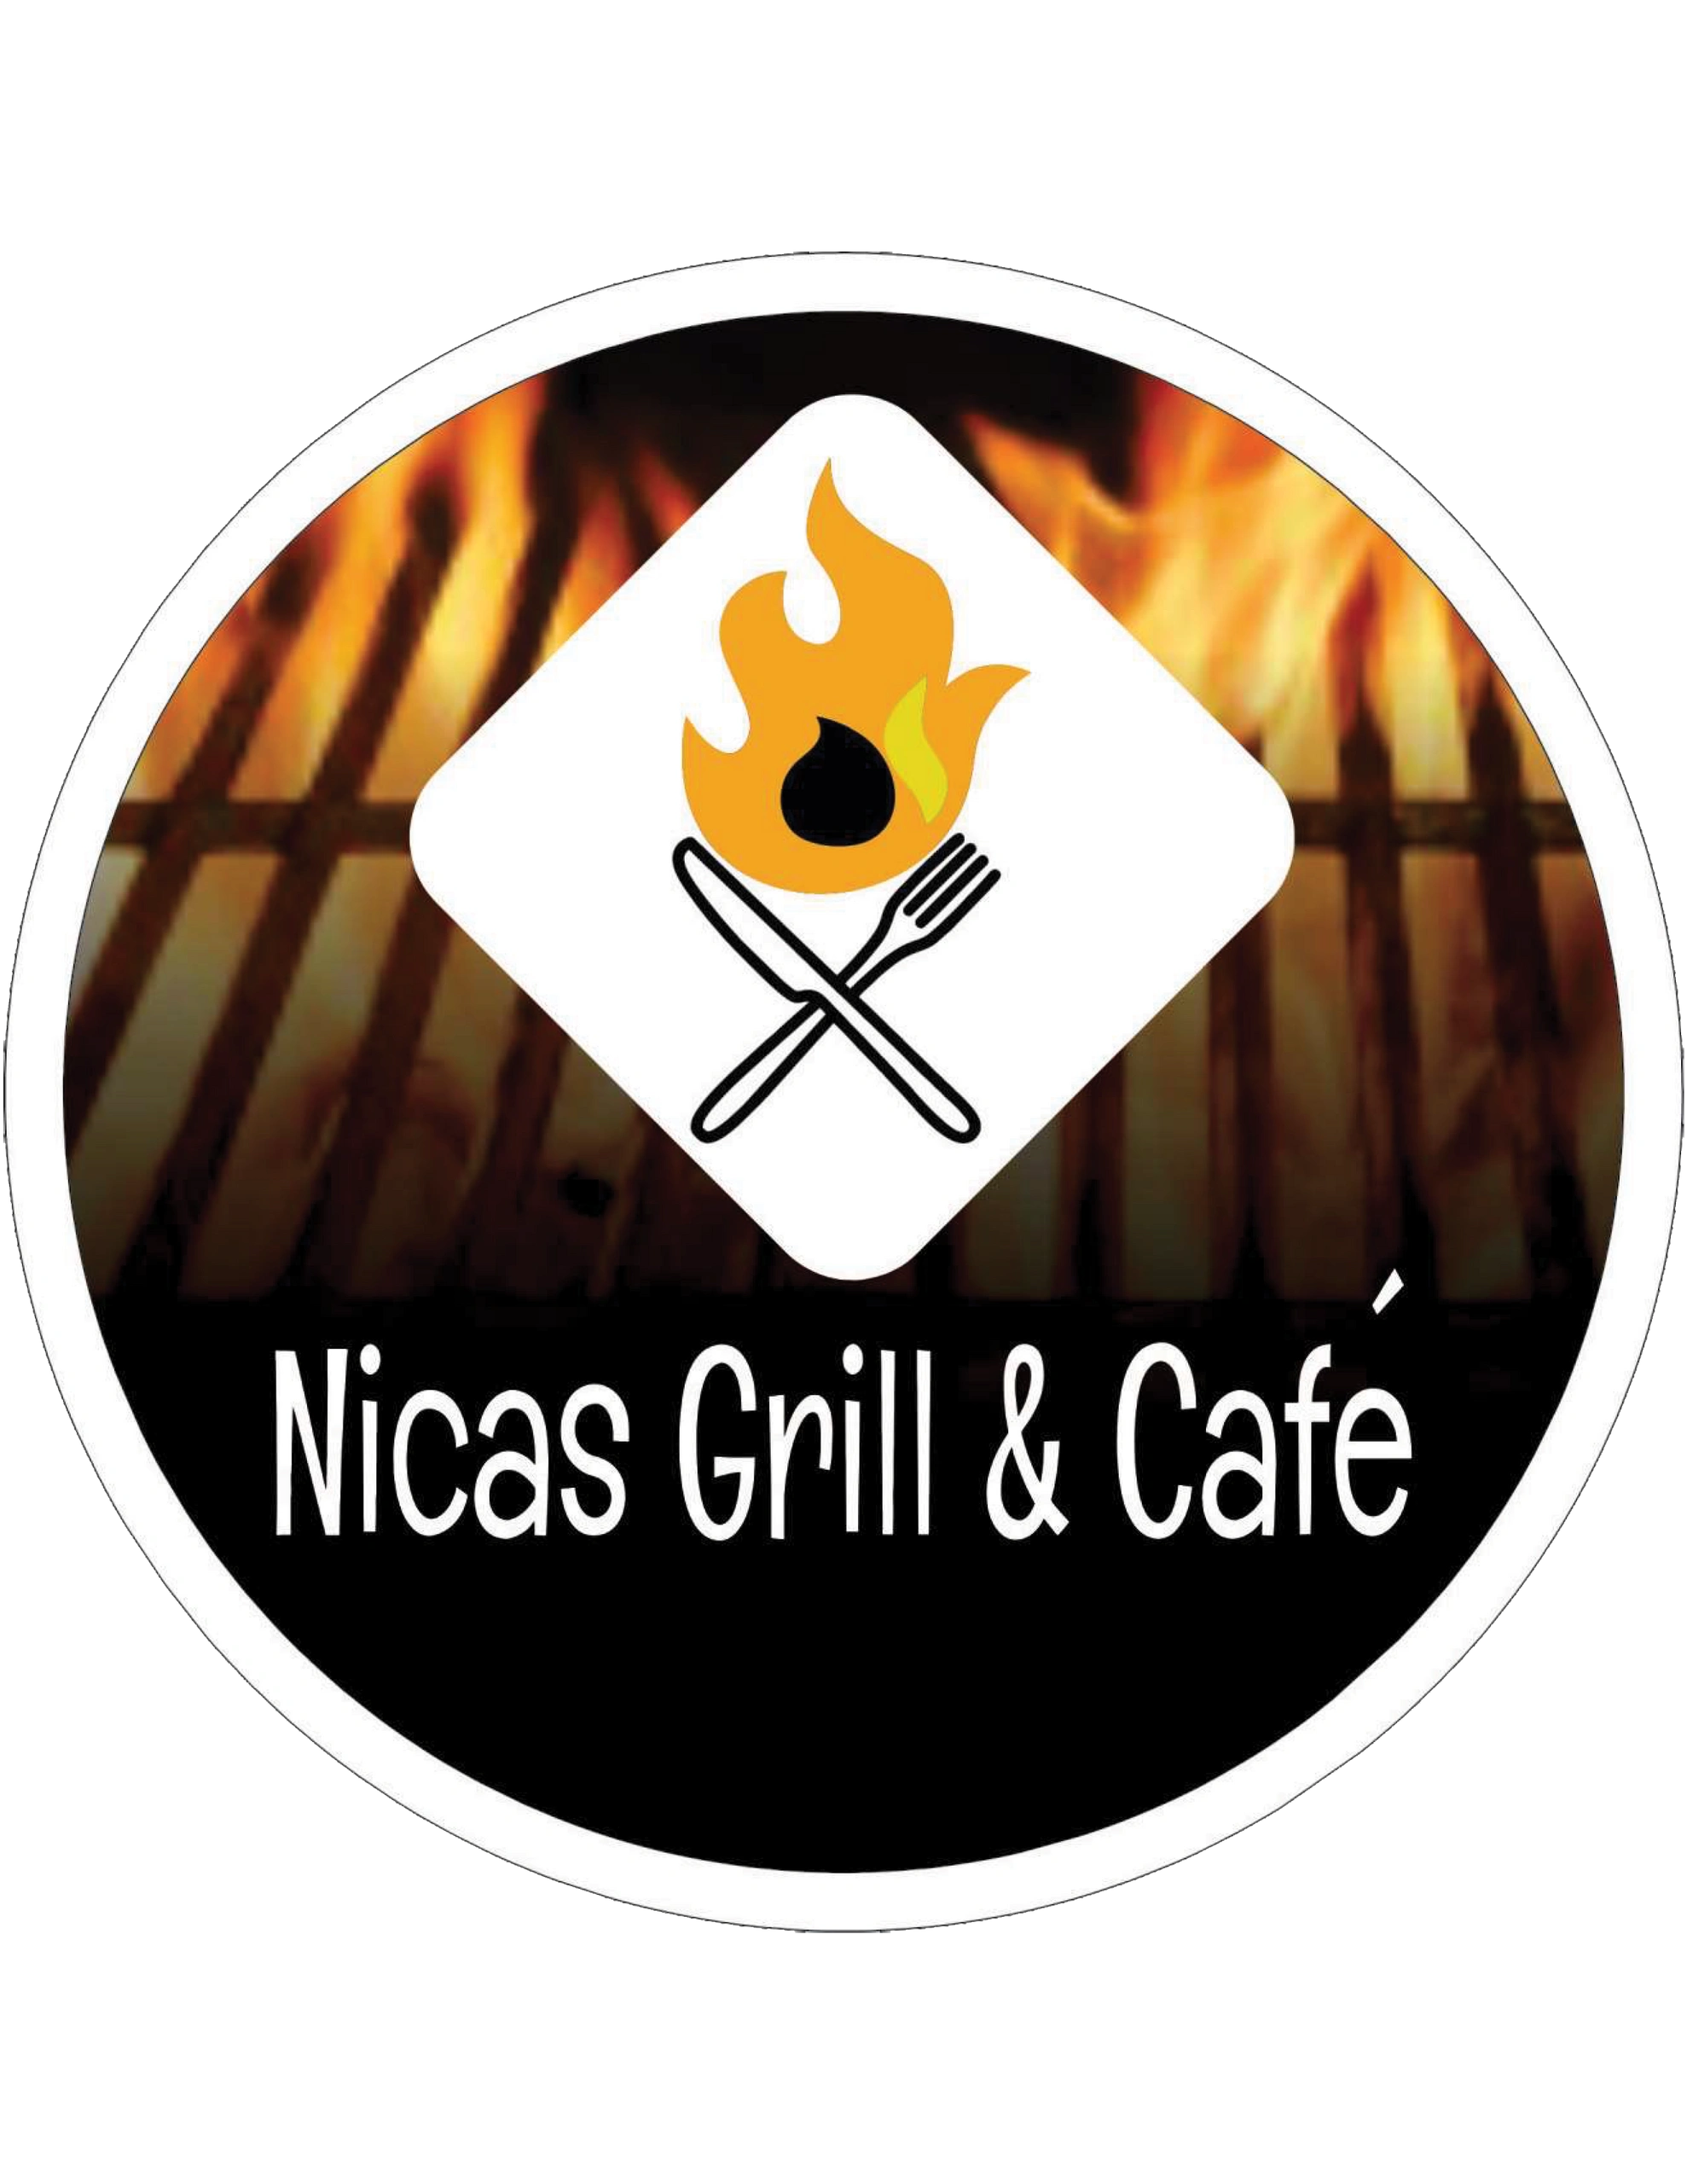 Nicas Grill & Café